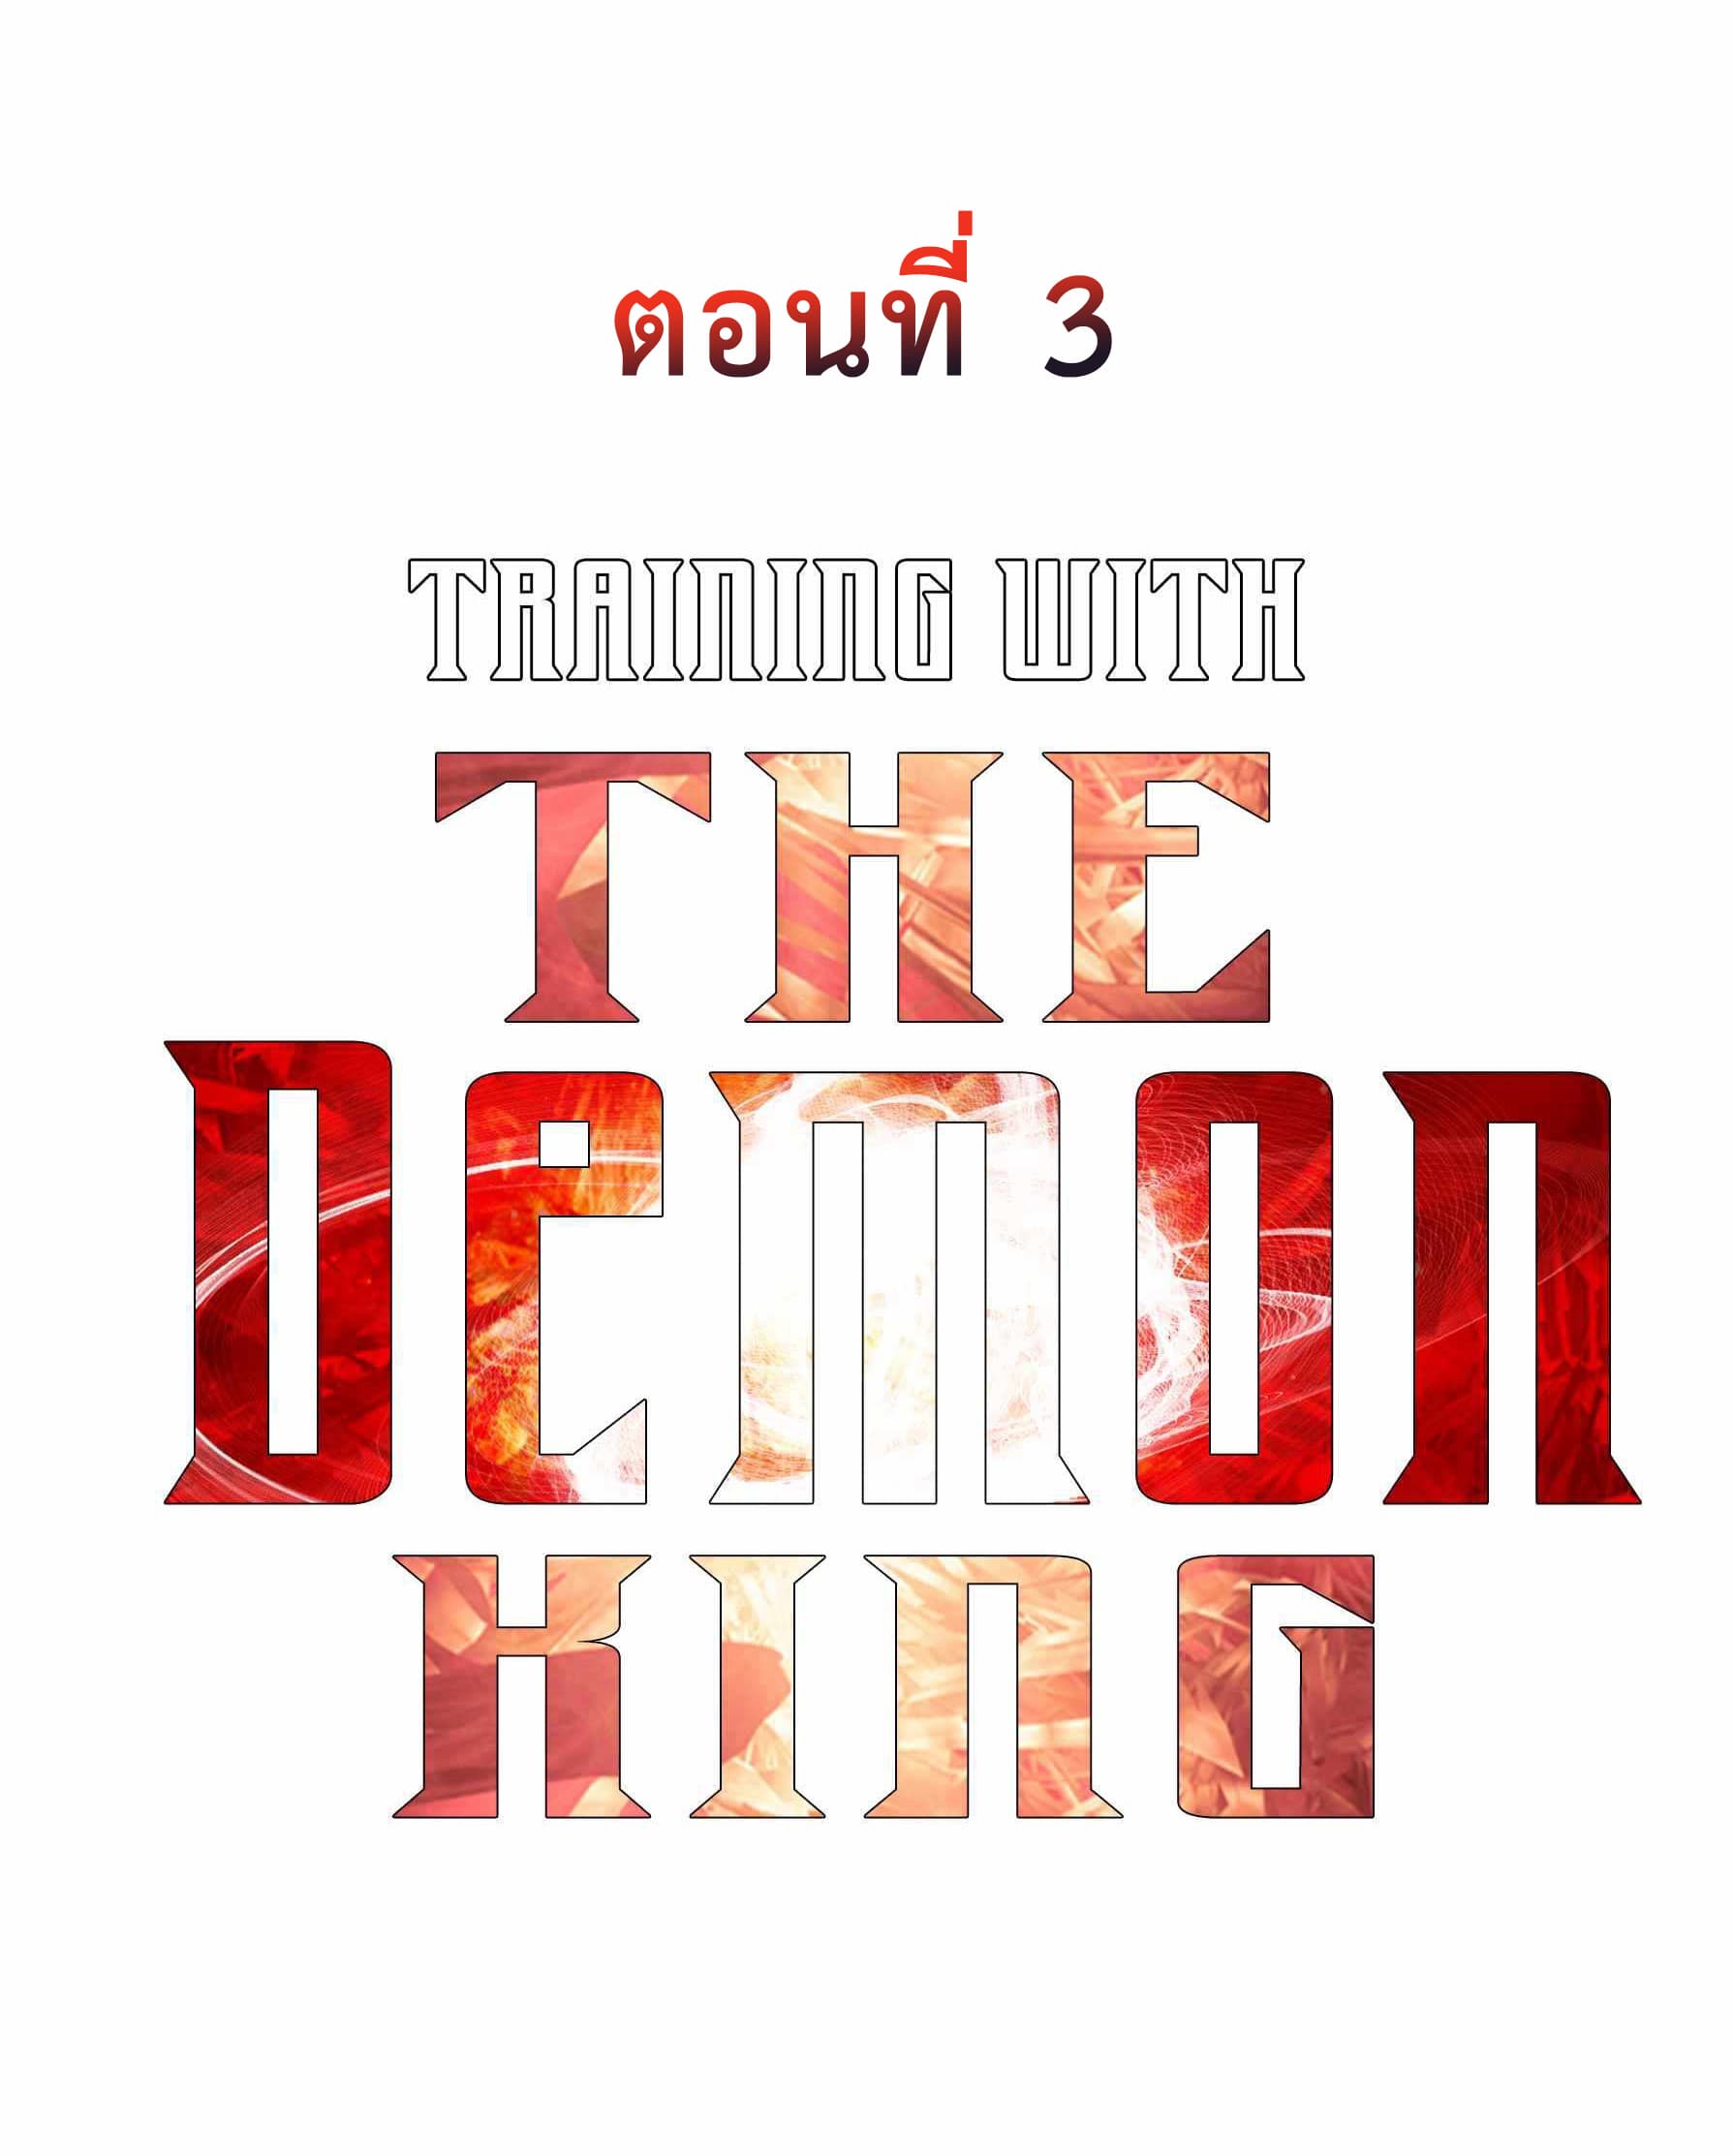 Training With The Demon King เหล่าผู้กล้าอยากฝึกฝนกับราชาปีศาจ 3-3